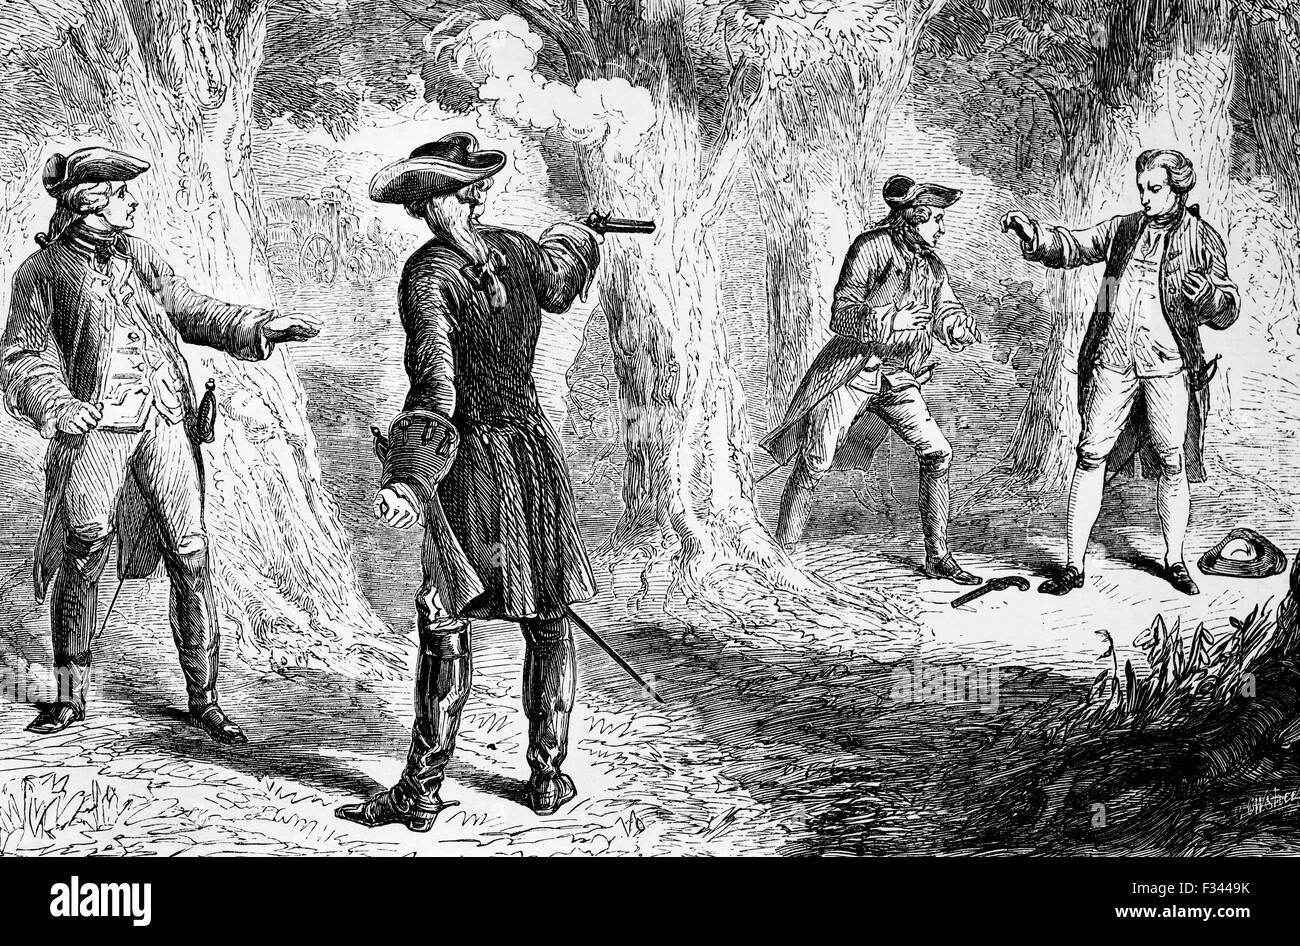 Un duel avec pistolets entre Samuel Martin, homme politique et John Wilkes un autre politicien radical a eu lieu dans la région de Hyde Park le 16 novembre 1763. John Wilkes a été gravement blessé, s'enfuit à Paris et a été déclaré hors-la-loi. Banque D'Images